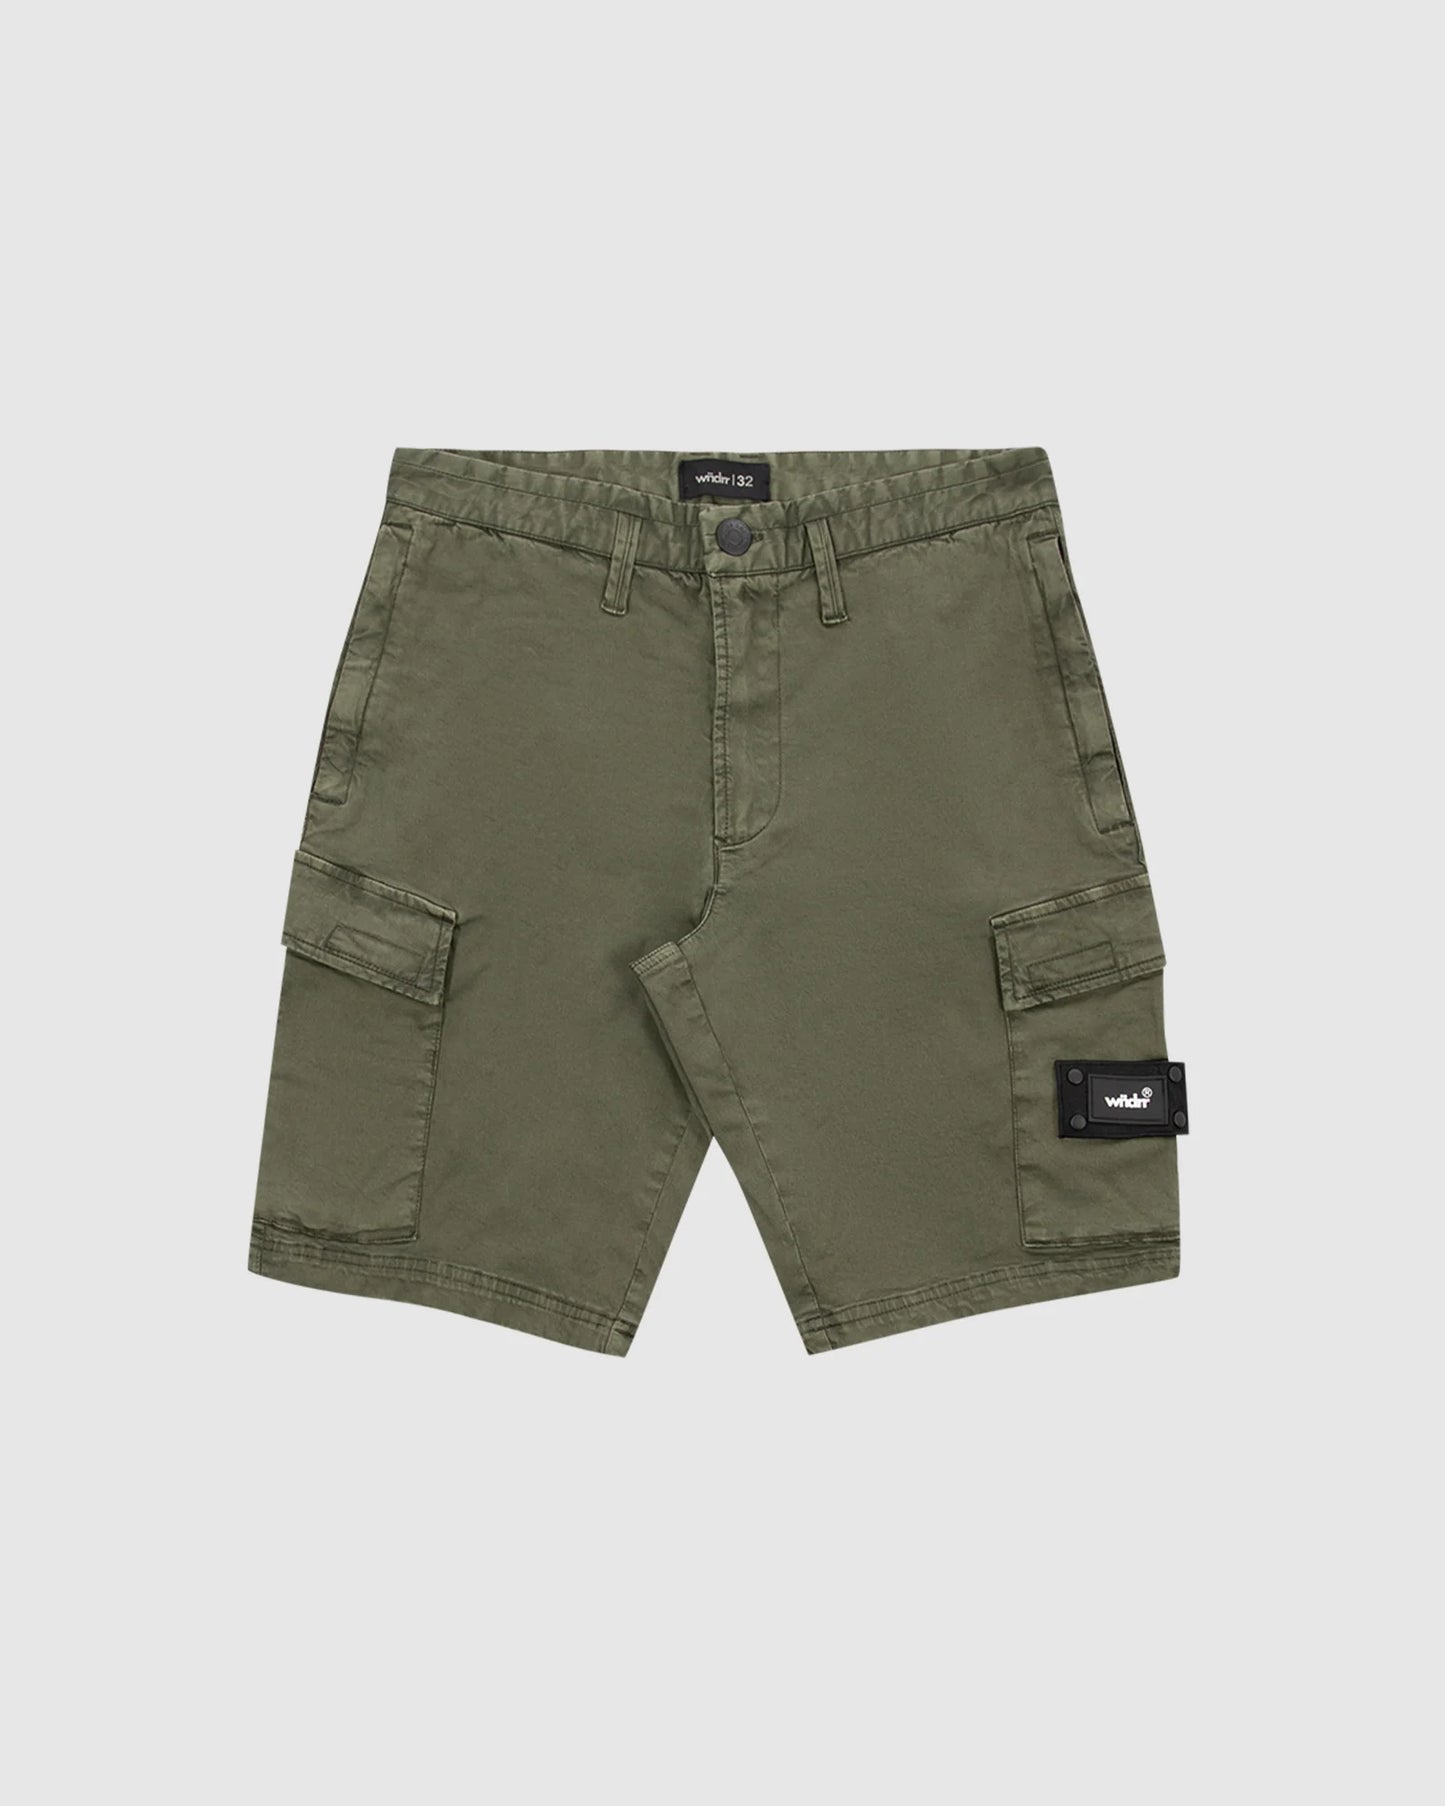 WNDRR Fairfax Mens Cargo Shorts - Slate Green